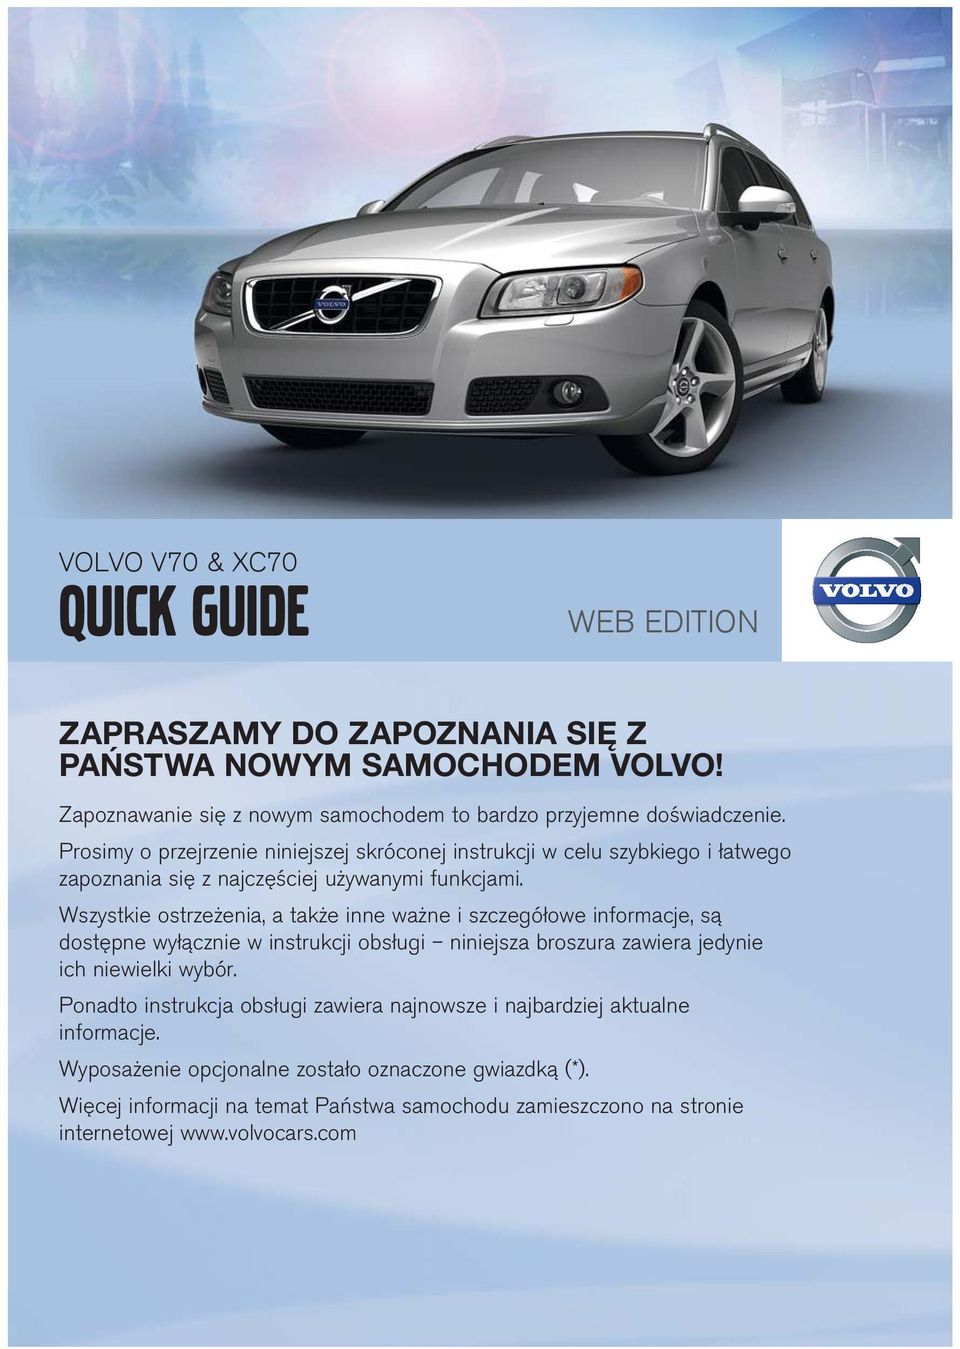 Volvo V70 & Xc70. Quick Guide Web Edition Zapraszamy Do Zapoznania Się Z Państwa Nowym Samochodem Volvo! - Pdf Darmowe Pobieranie